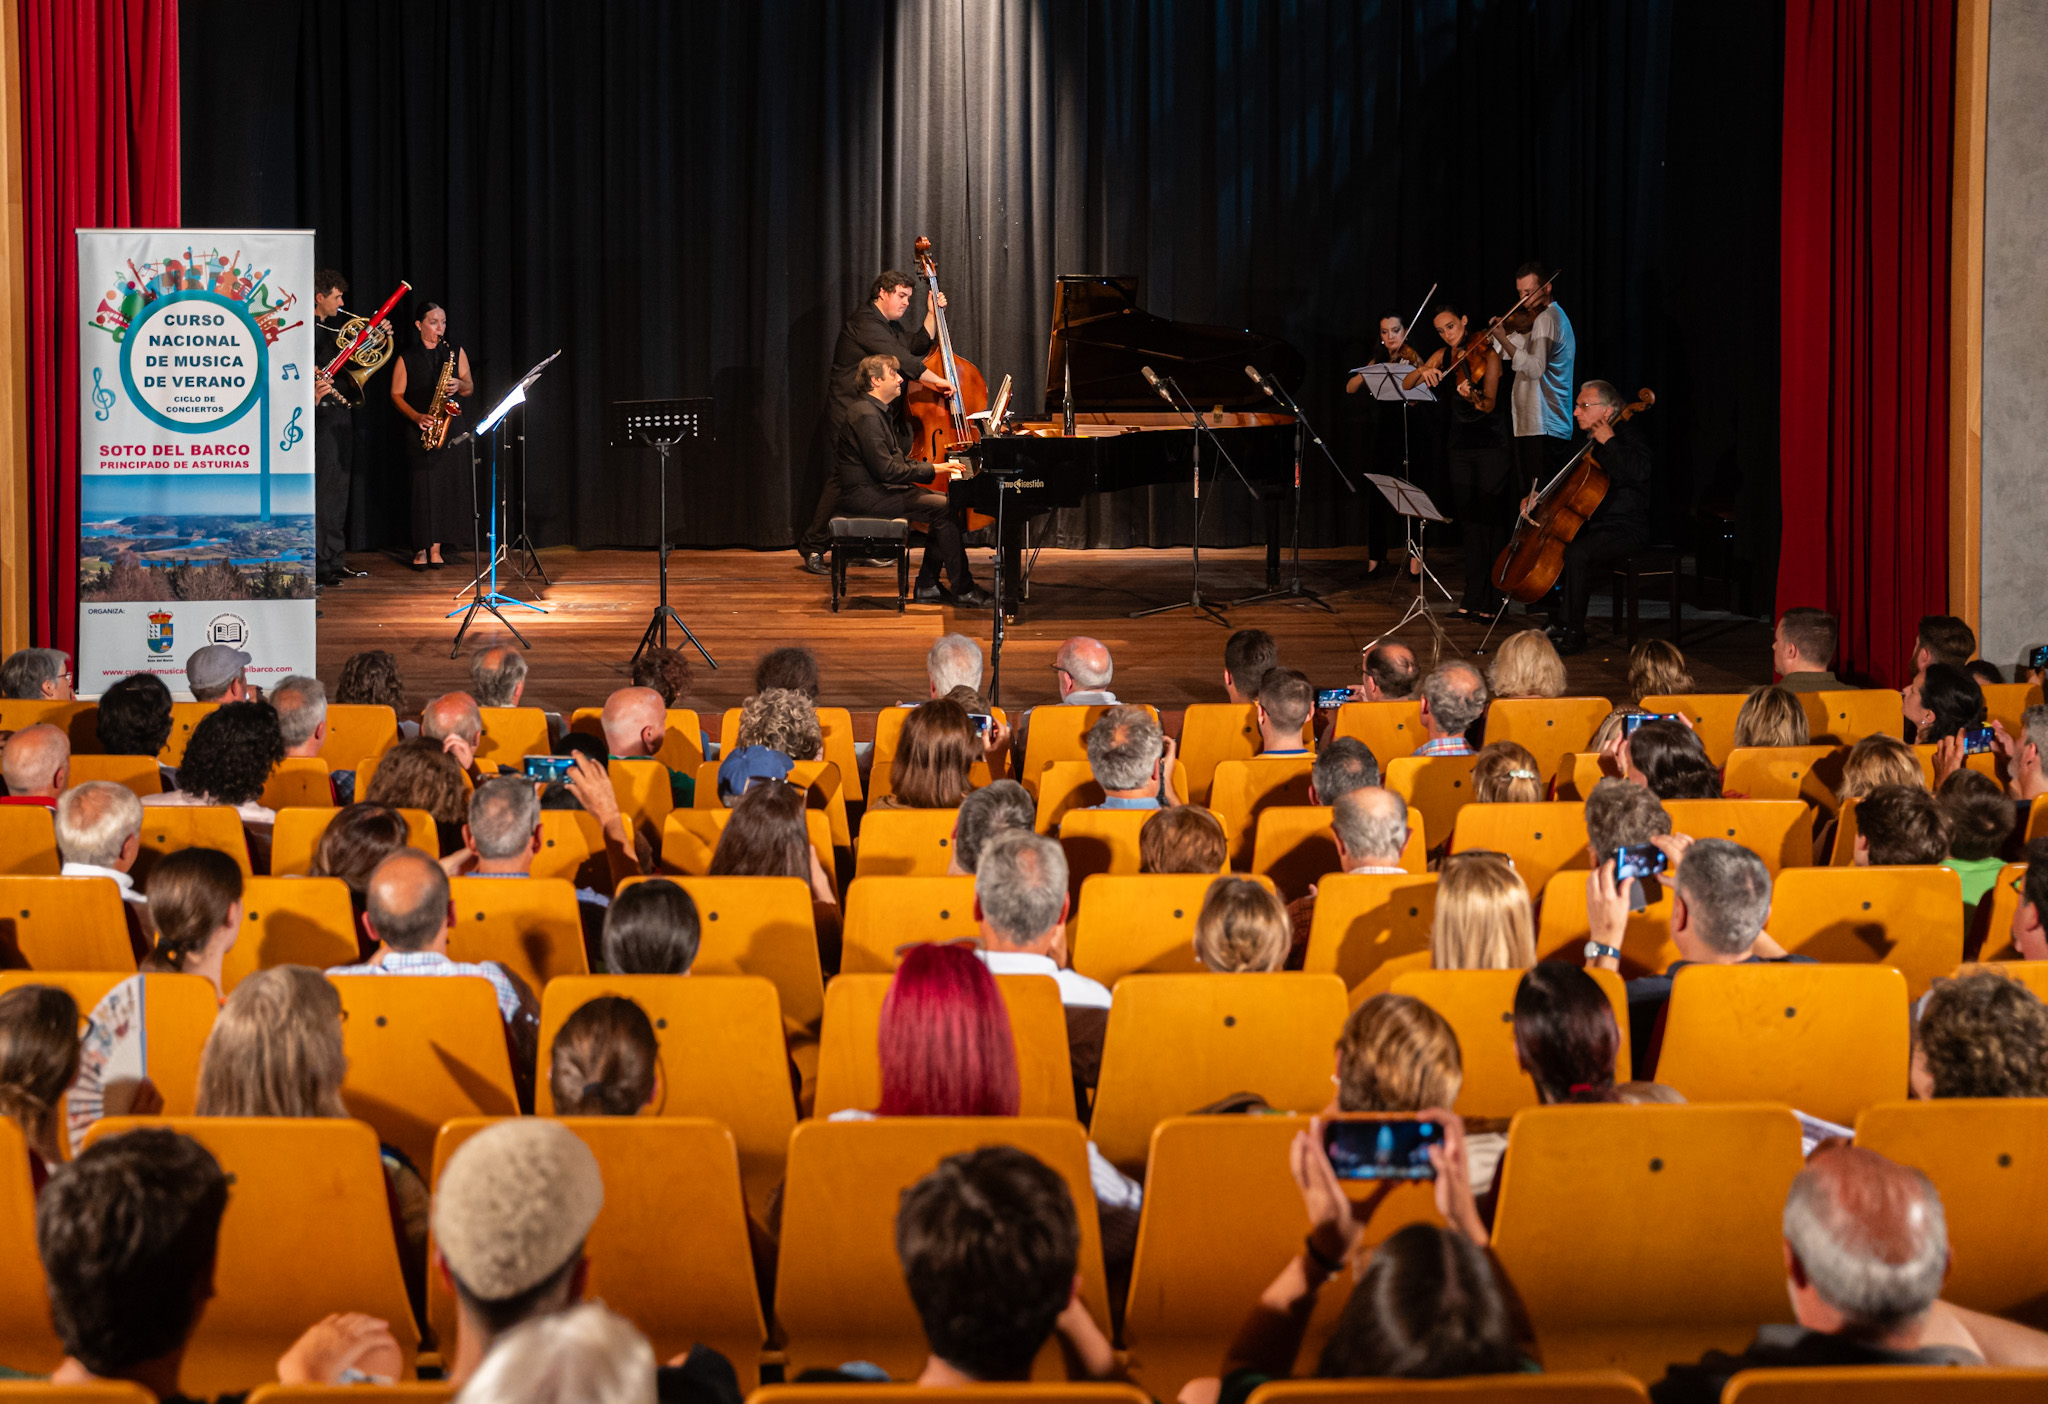 La nueva España – Primer concierto en el Clarín del profesorado del curso de música de Soto del Barco